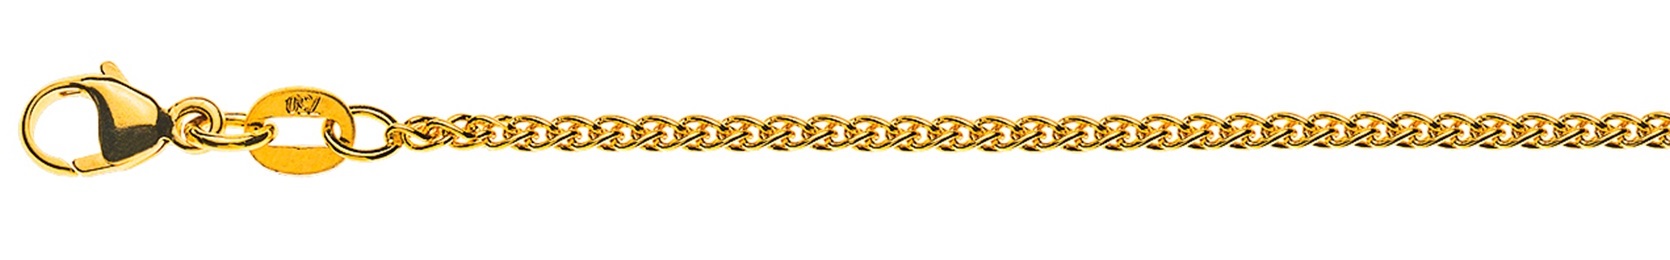 AURONOS Élégance Necklace yellow gold 14K cable chain 38cm 1.6mm